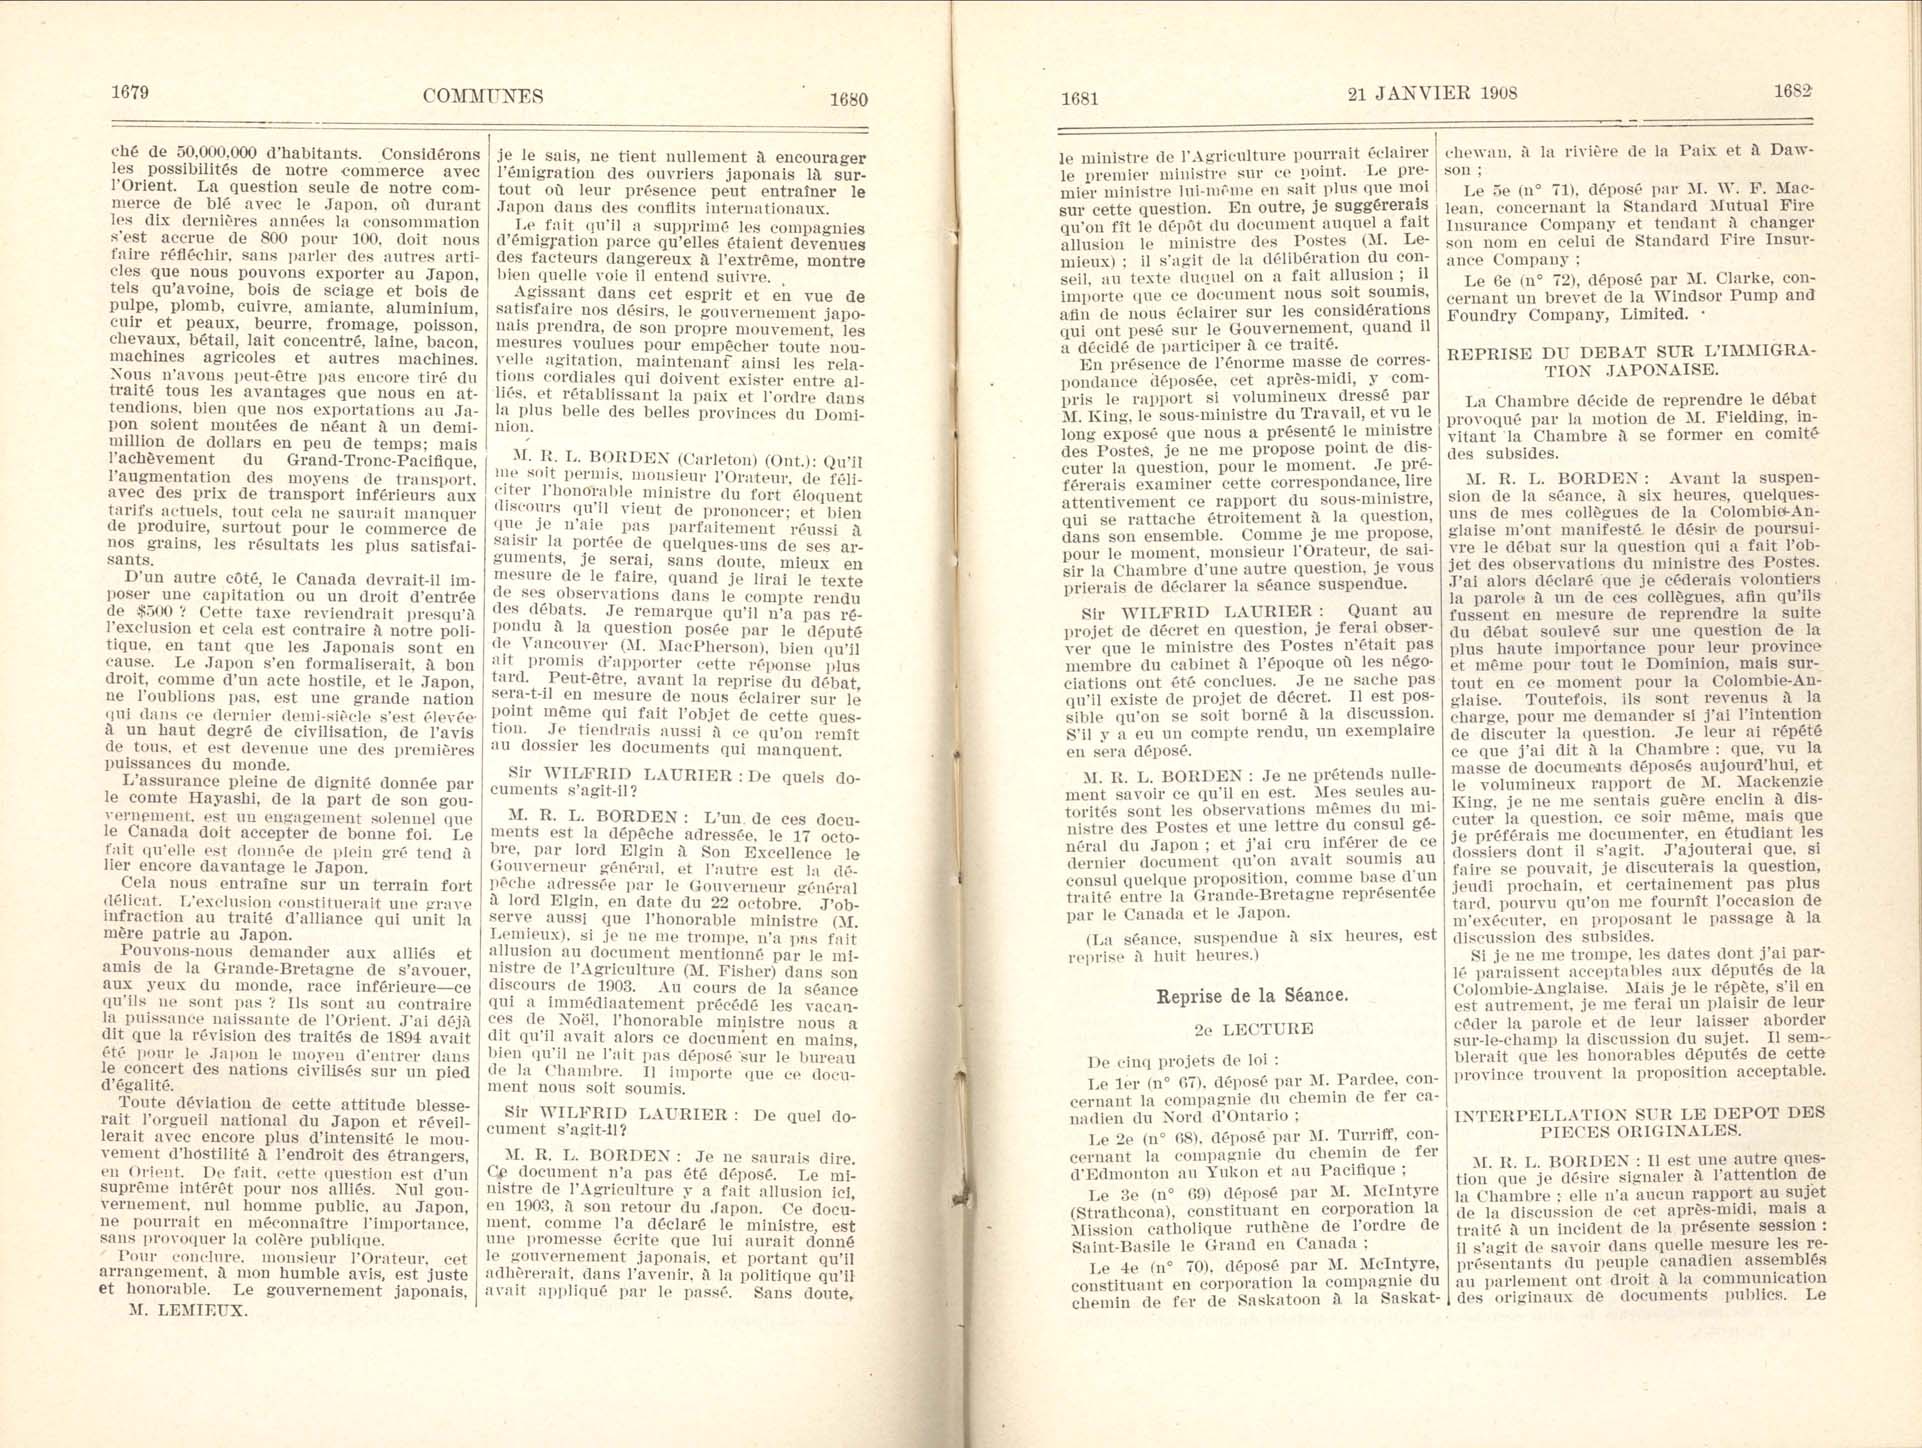 Page 1679, 1680, 1681, 1682 Entente à l’amiable, 1908